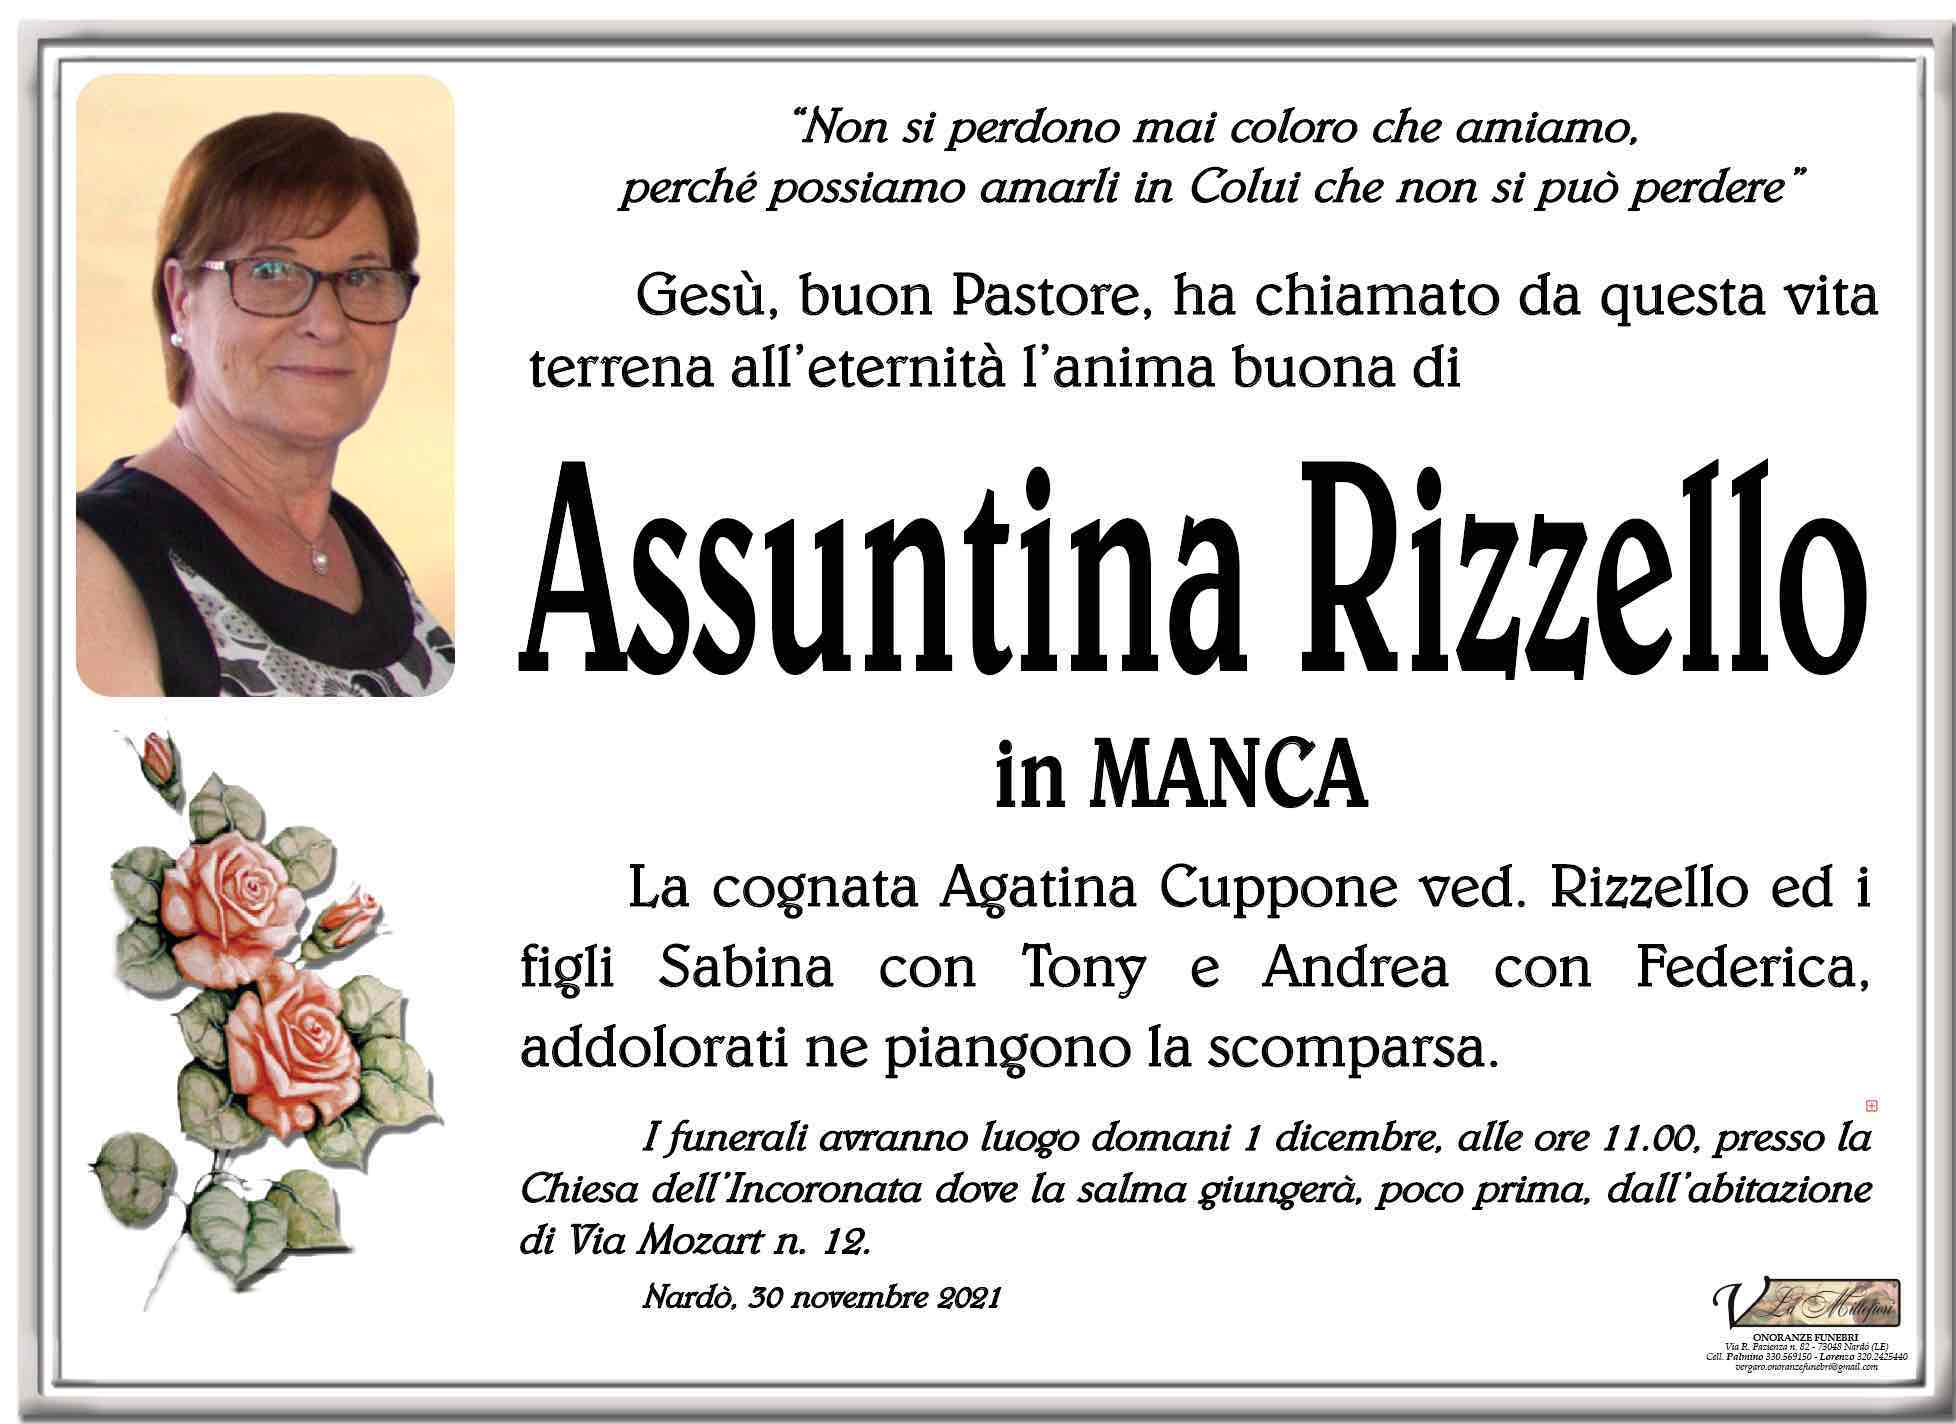 Assuntina Rizzello